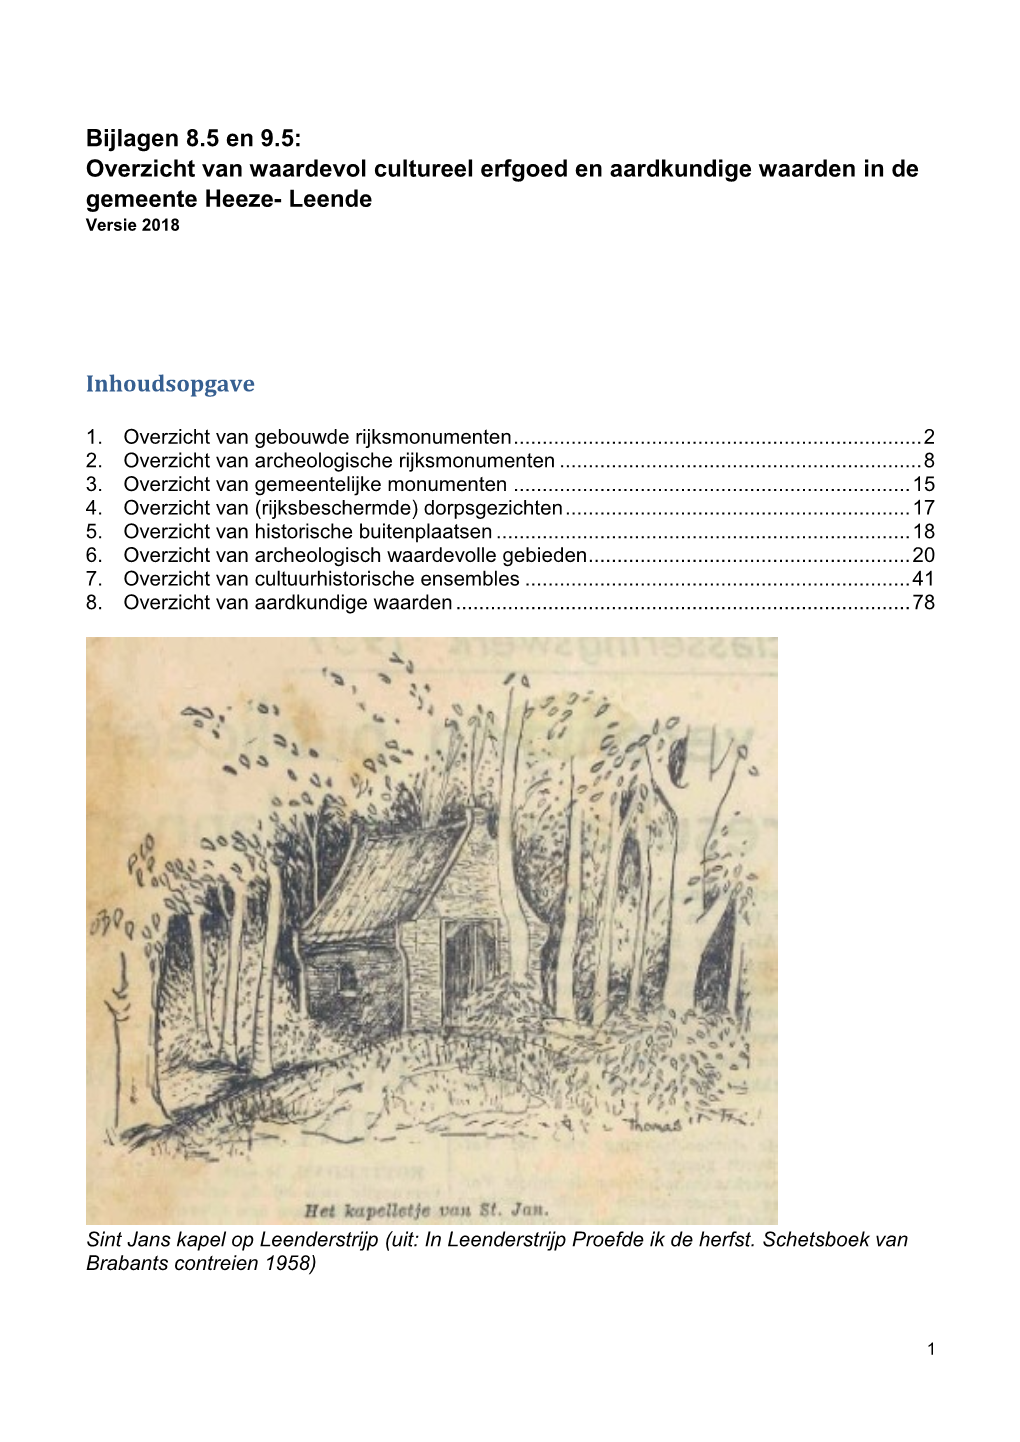 Bijlagen 8.5 En 9.5: Overzicht Van Waardevol Cultureel Erfgoed En Aardkundige Waarden in De Gemeente Heeze- Leende Versie 2018